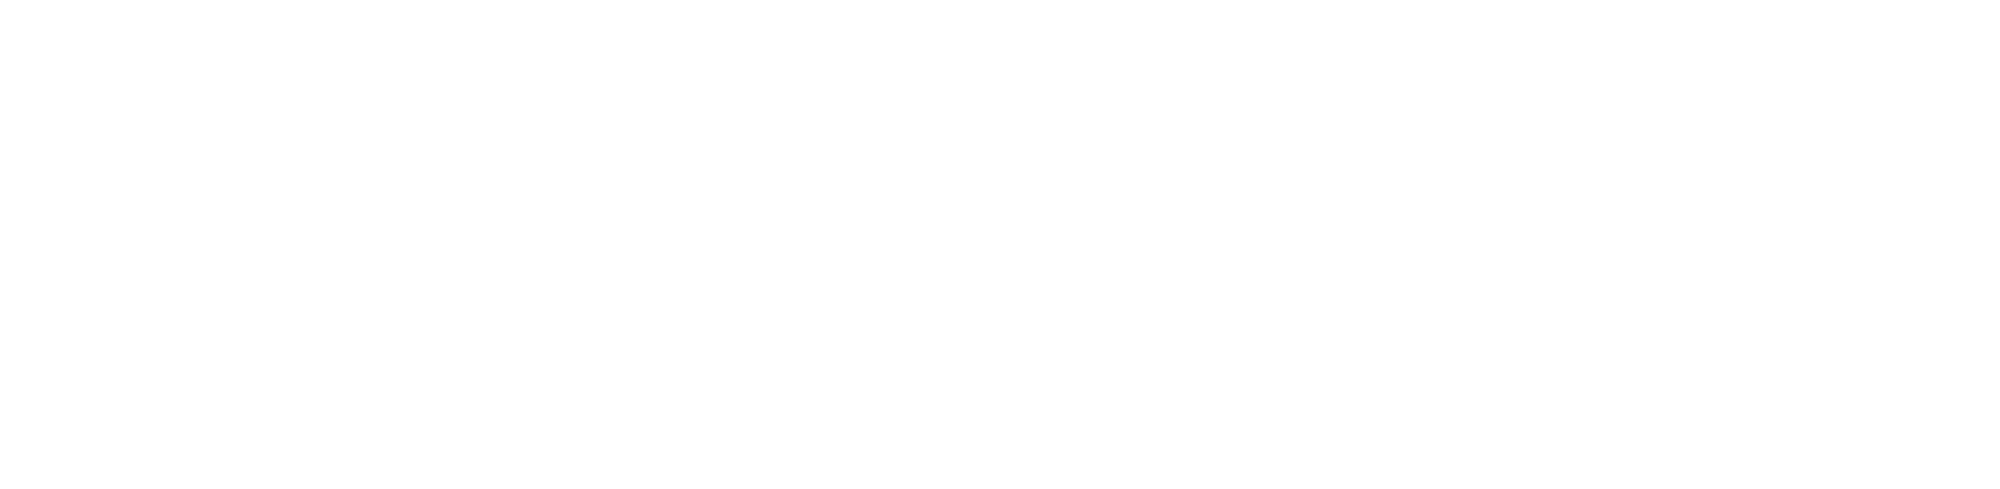 bookmytourism-high-resolution-logo-white-transparent